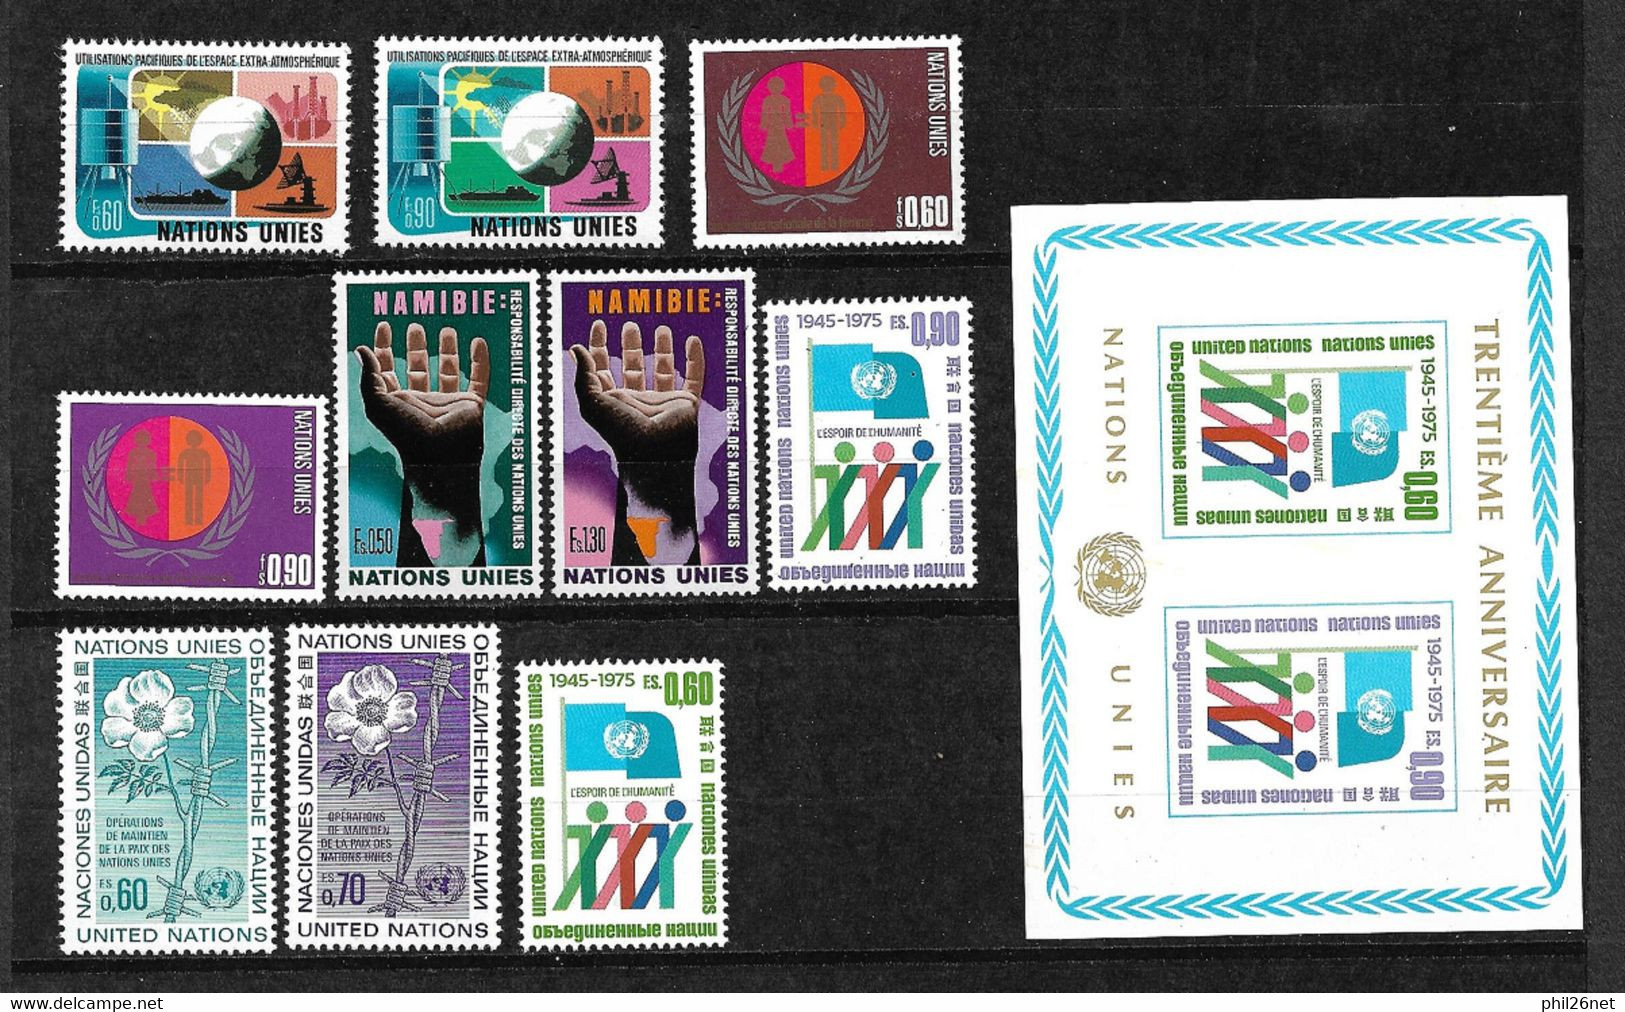 ONU Genève N°46 à  55 & Bloc 1 Neufs *  *  TB =MNH  VF  à La Faciale En 1975  Moins 20 % Les  Moins Chers Du Site  ! ! ! - Unused Stamps